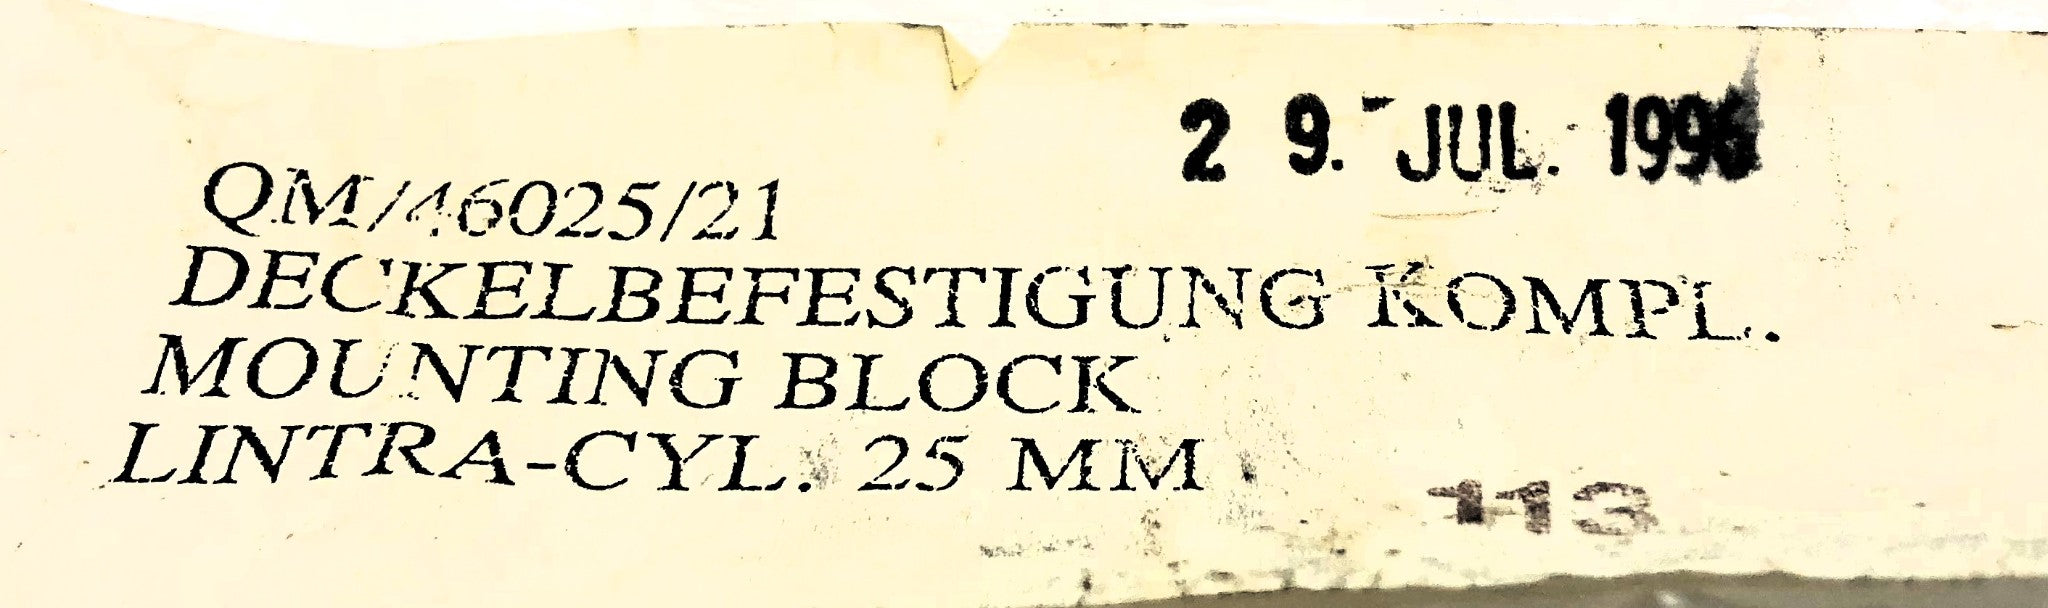 Deckelbefestigung Cylinder Foot Mounting Block QM/46025/21 NOS